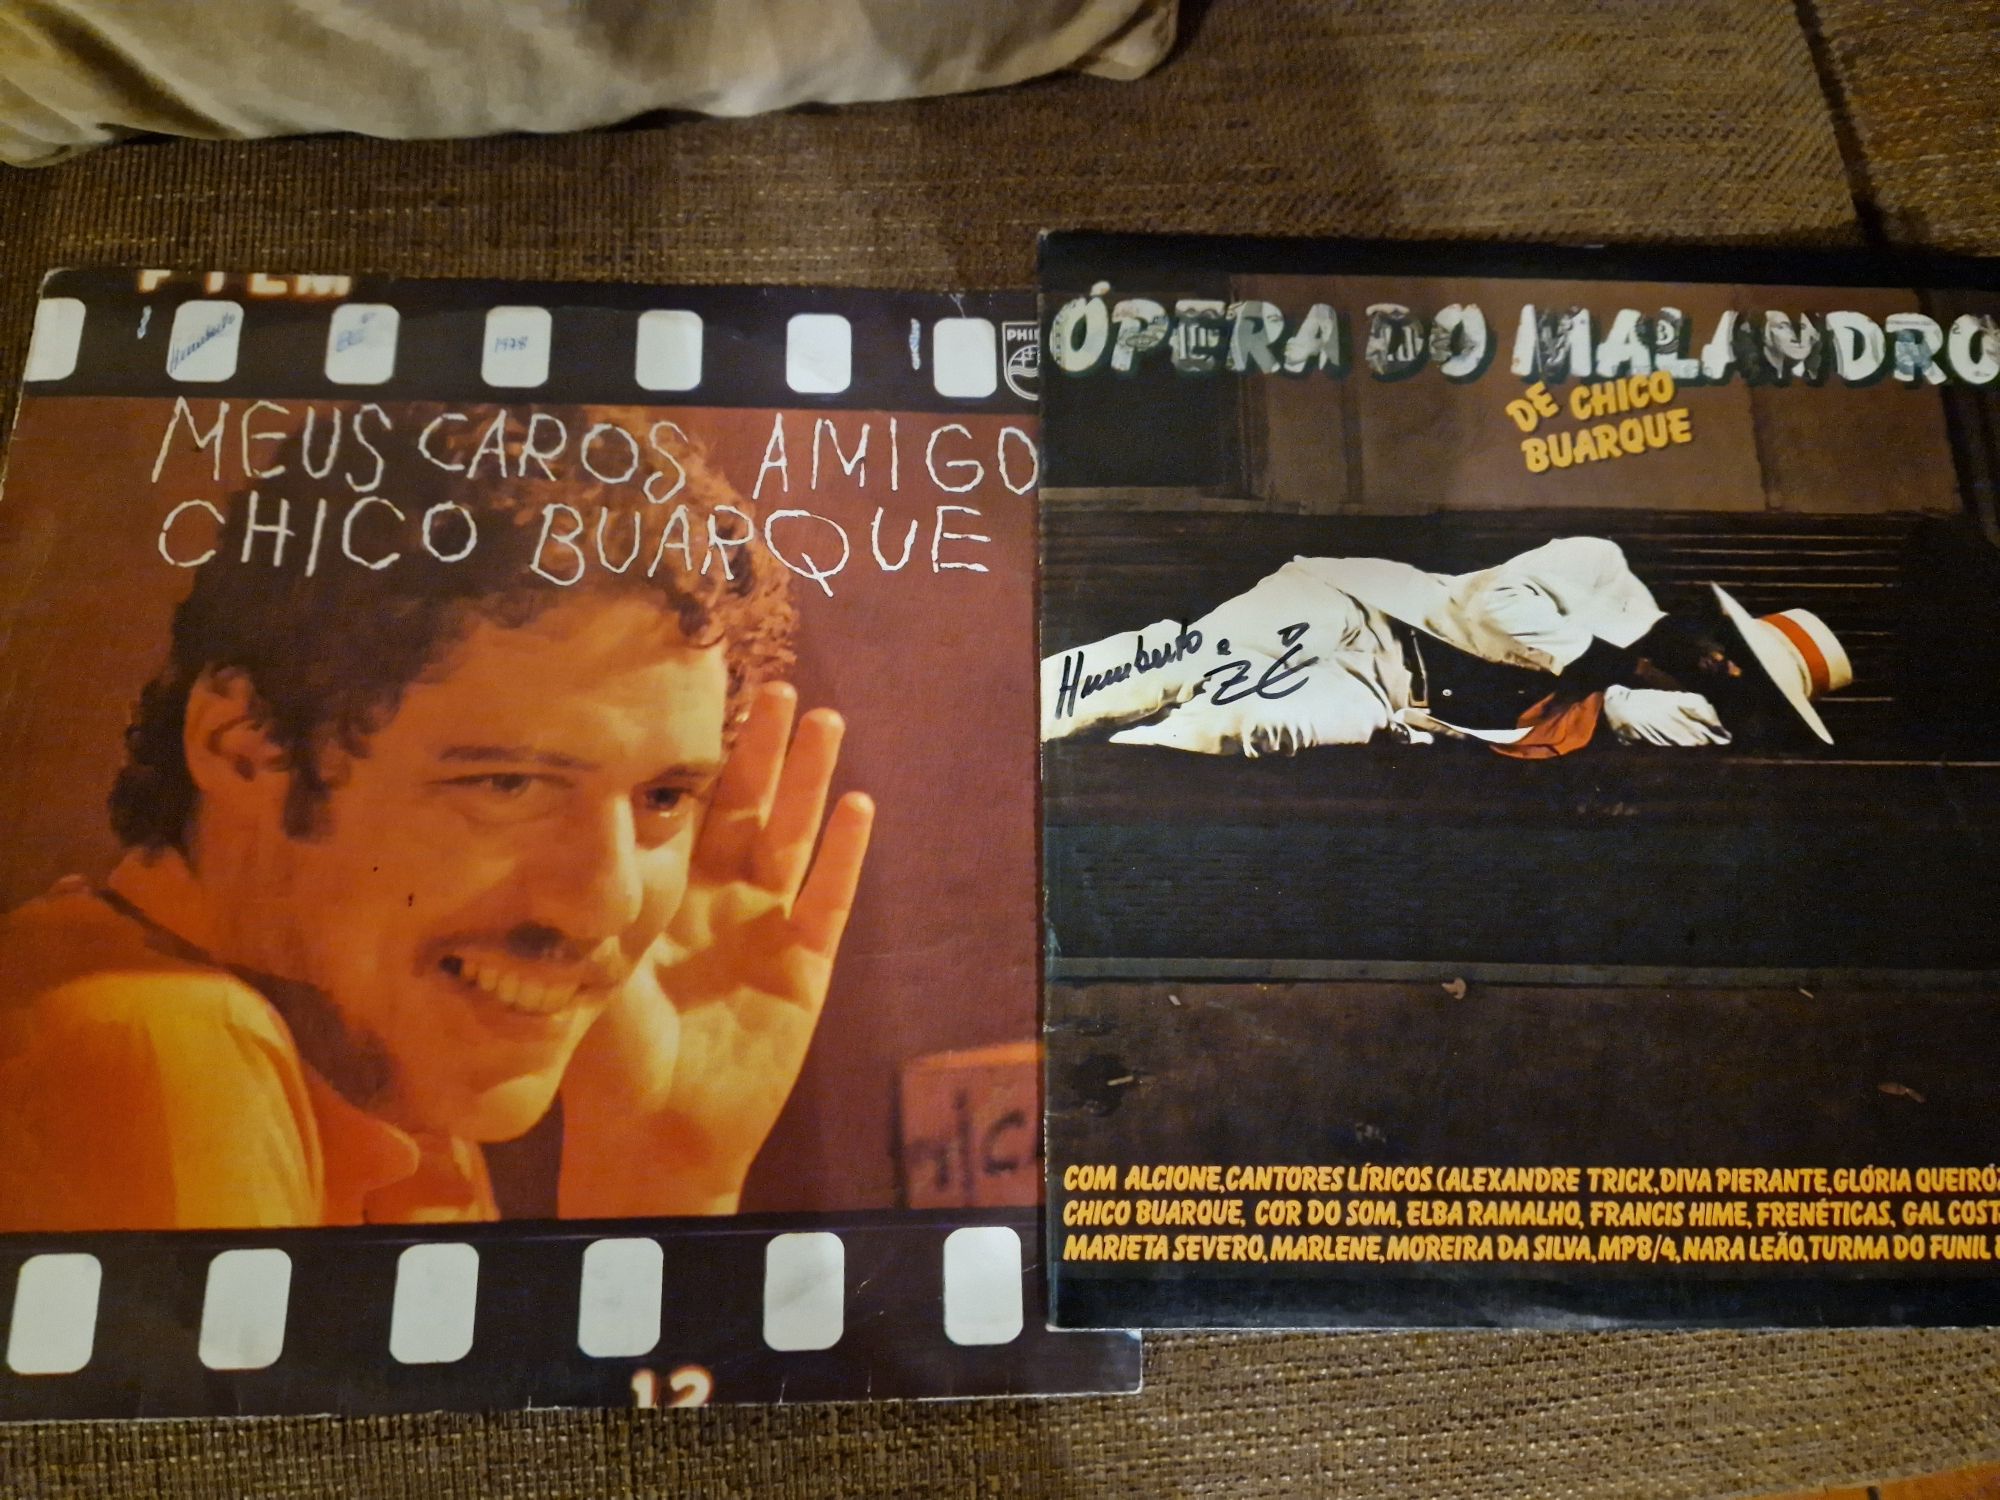 Discos de vinil (Joplin, ,Chico Buarque)